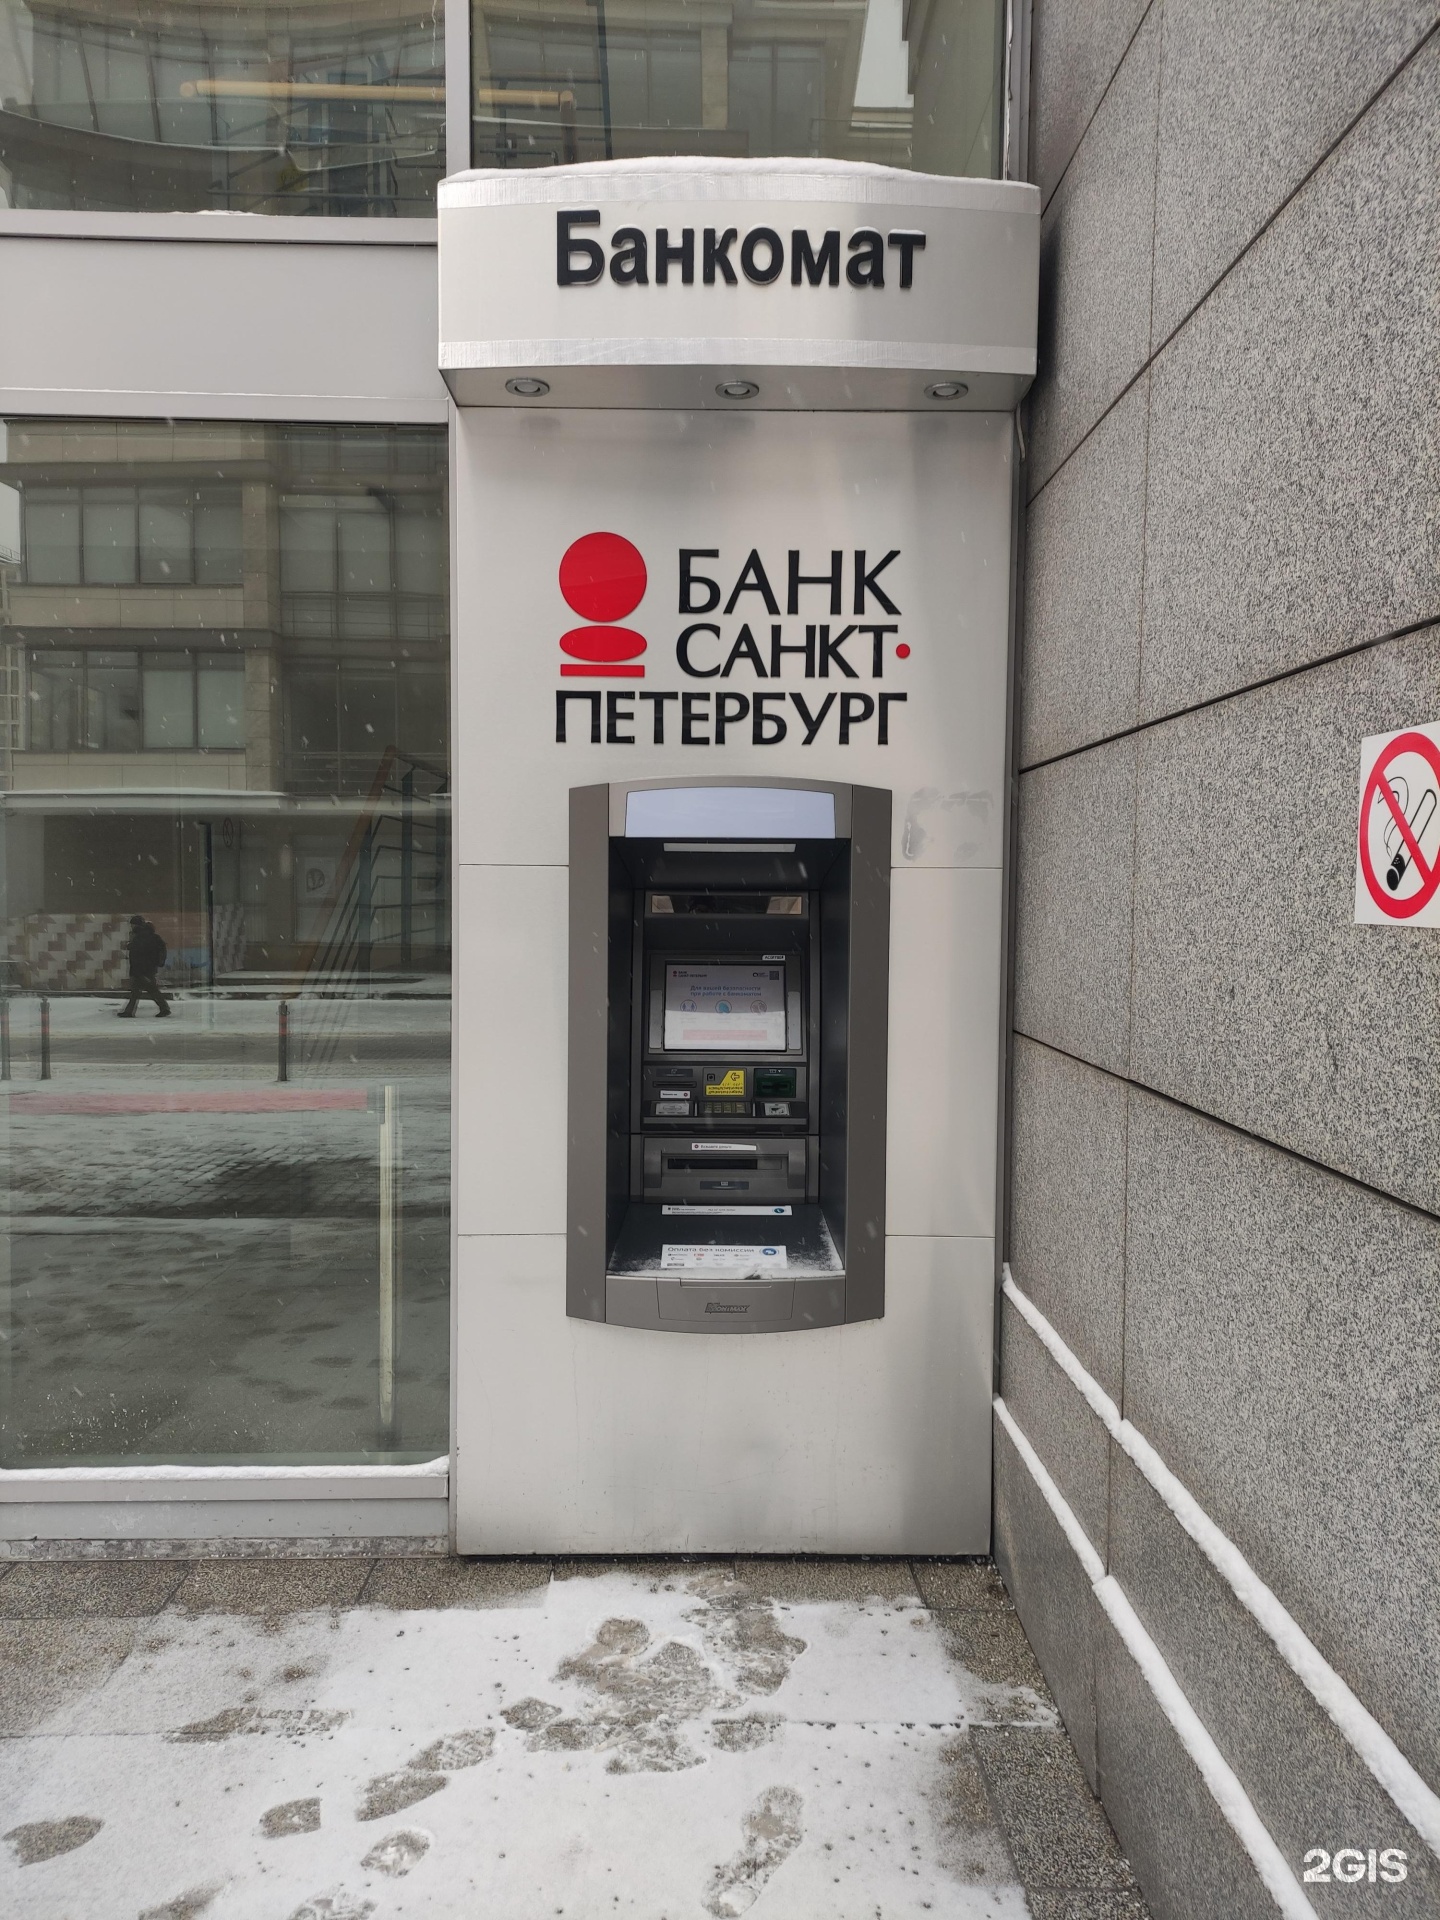 Сбербанк банкоматы спб рядом. Банкомат Санкт-Петербург банк. Терминал банка СПБ. Банк Санкт-Петербург в Москве. Банкомат СПБ рядом со мной.